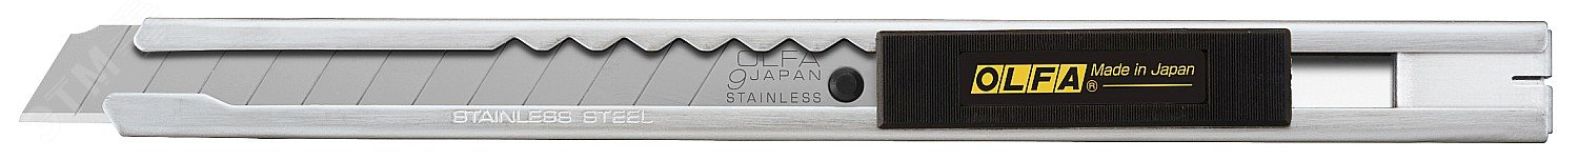 Нож строительный с выдвижным лезвием 9 мм OL-SVR-1 OLFA